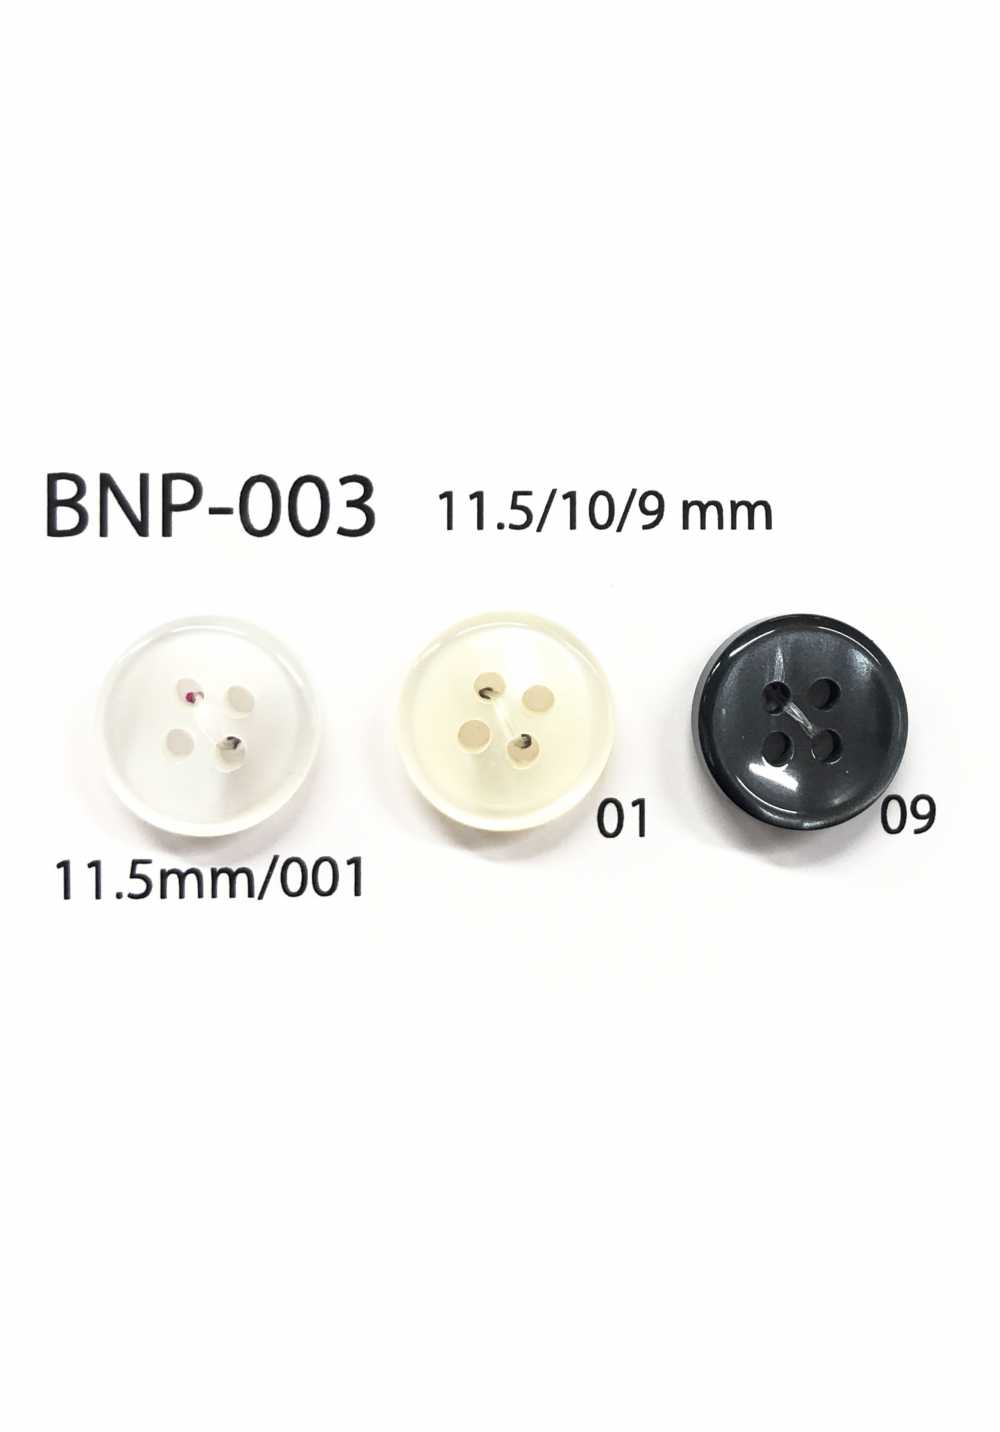 BNP-003 Botão Biopoliester 4 Furos IRIS